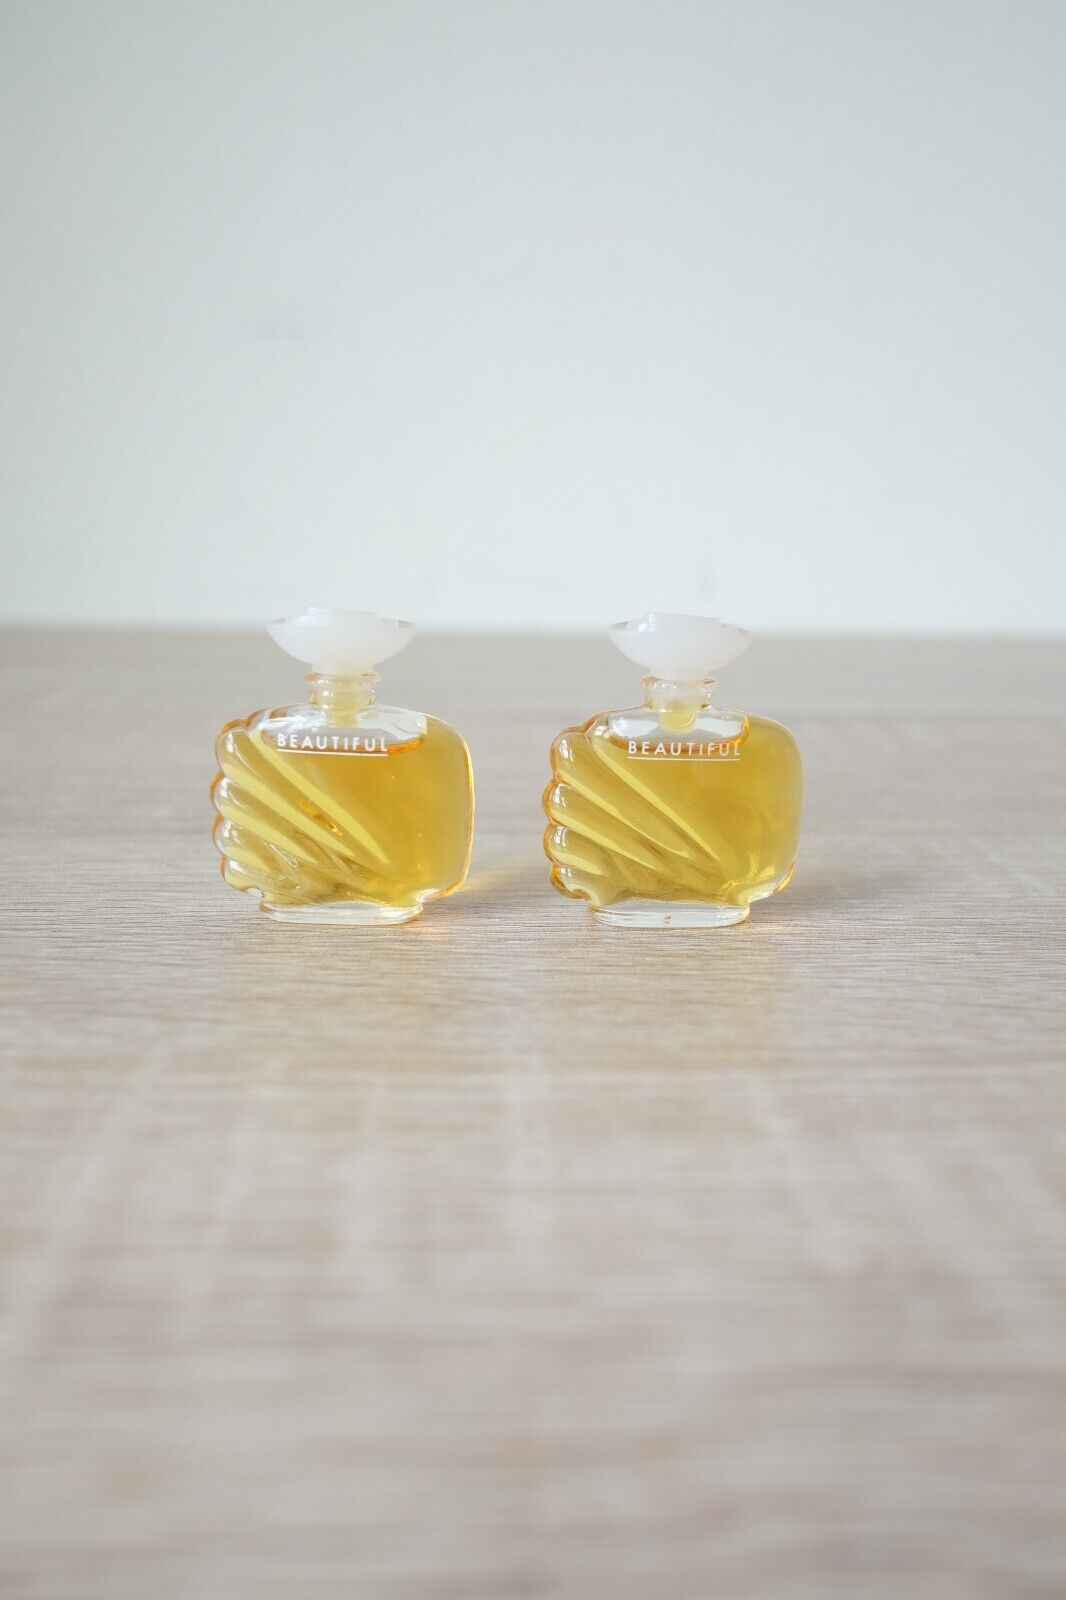 2 X BEAUTIFUL by Estee Lauder Splash Mini Bottle Eau De Toilette Perfume Vintage